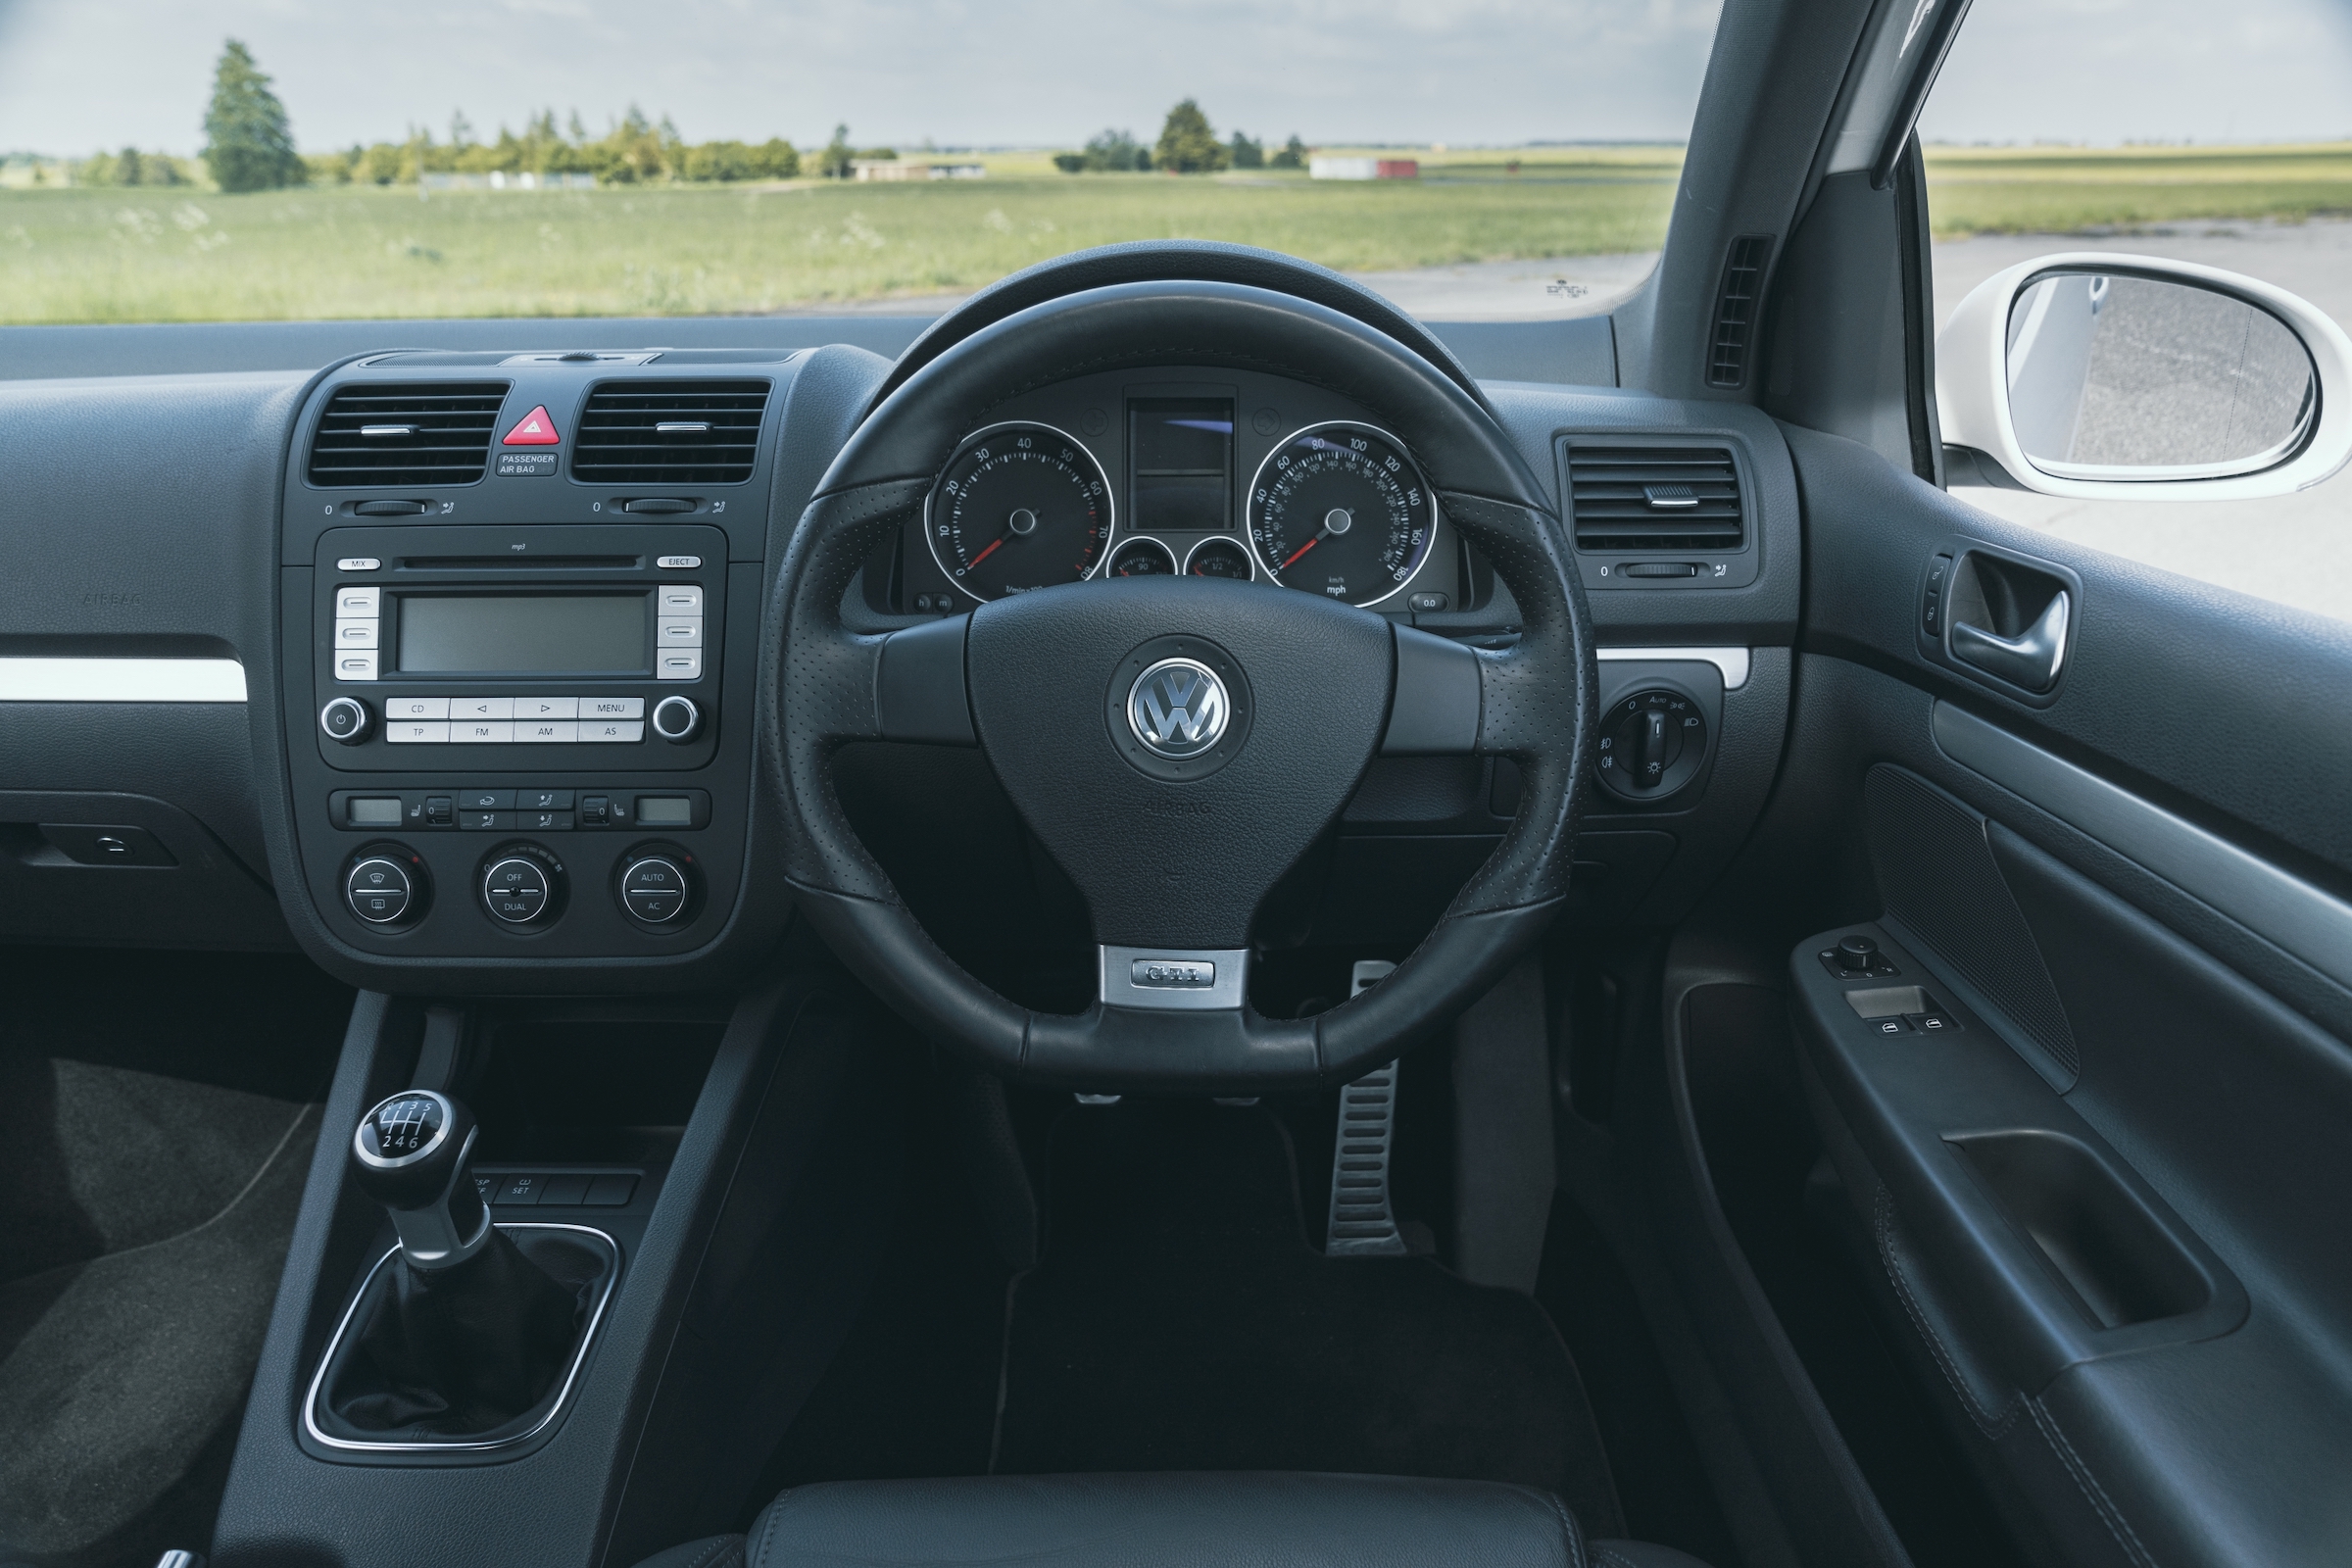 Volkswagen Golf GTI Mk5 interior